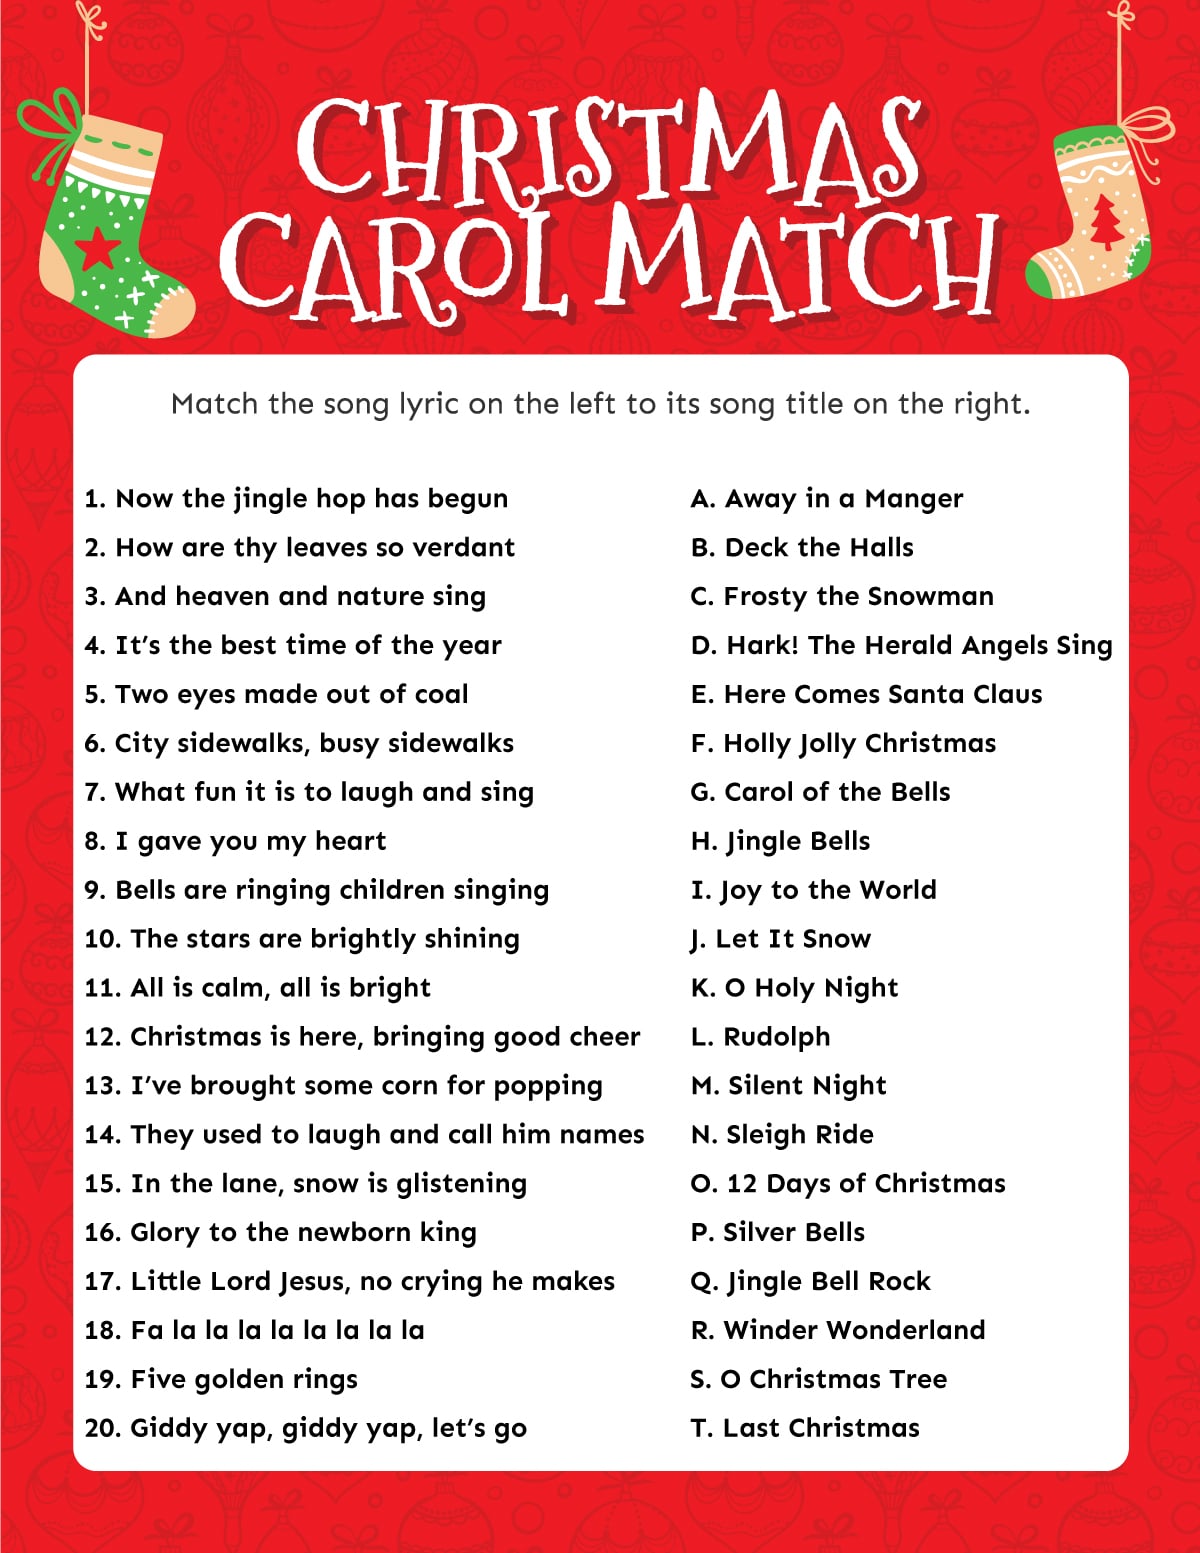 Free Printable Christmas Carol Game